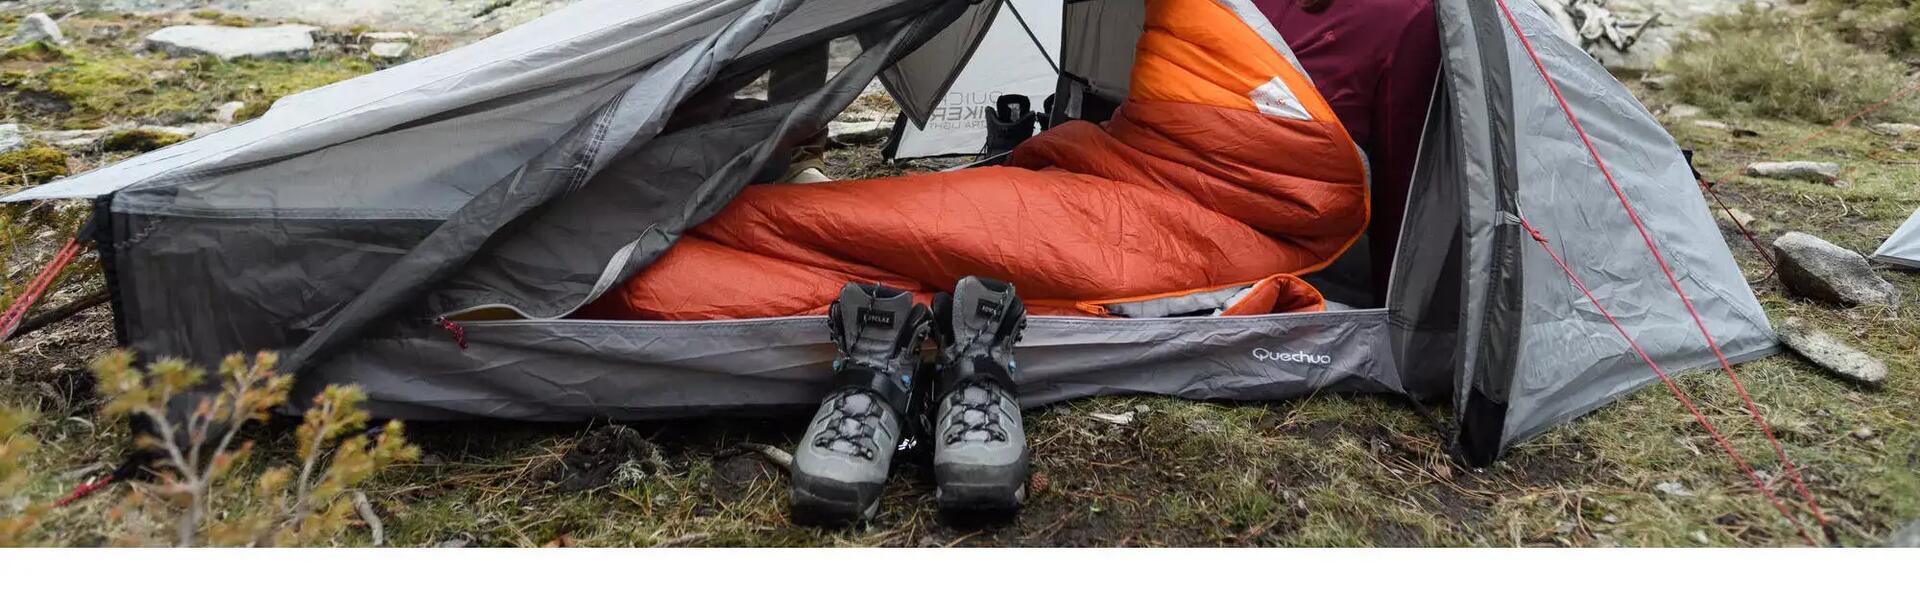 A woman in a sleeping bag inside her trekking tent